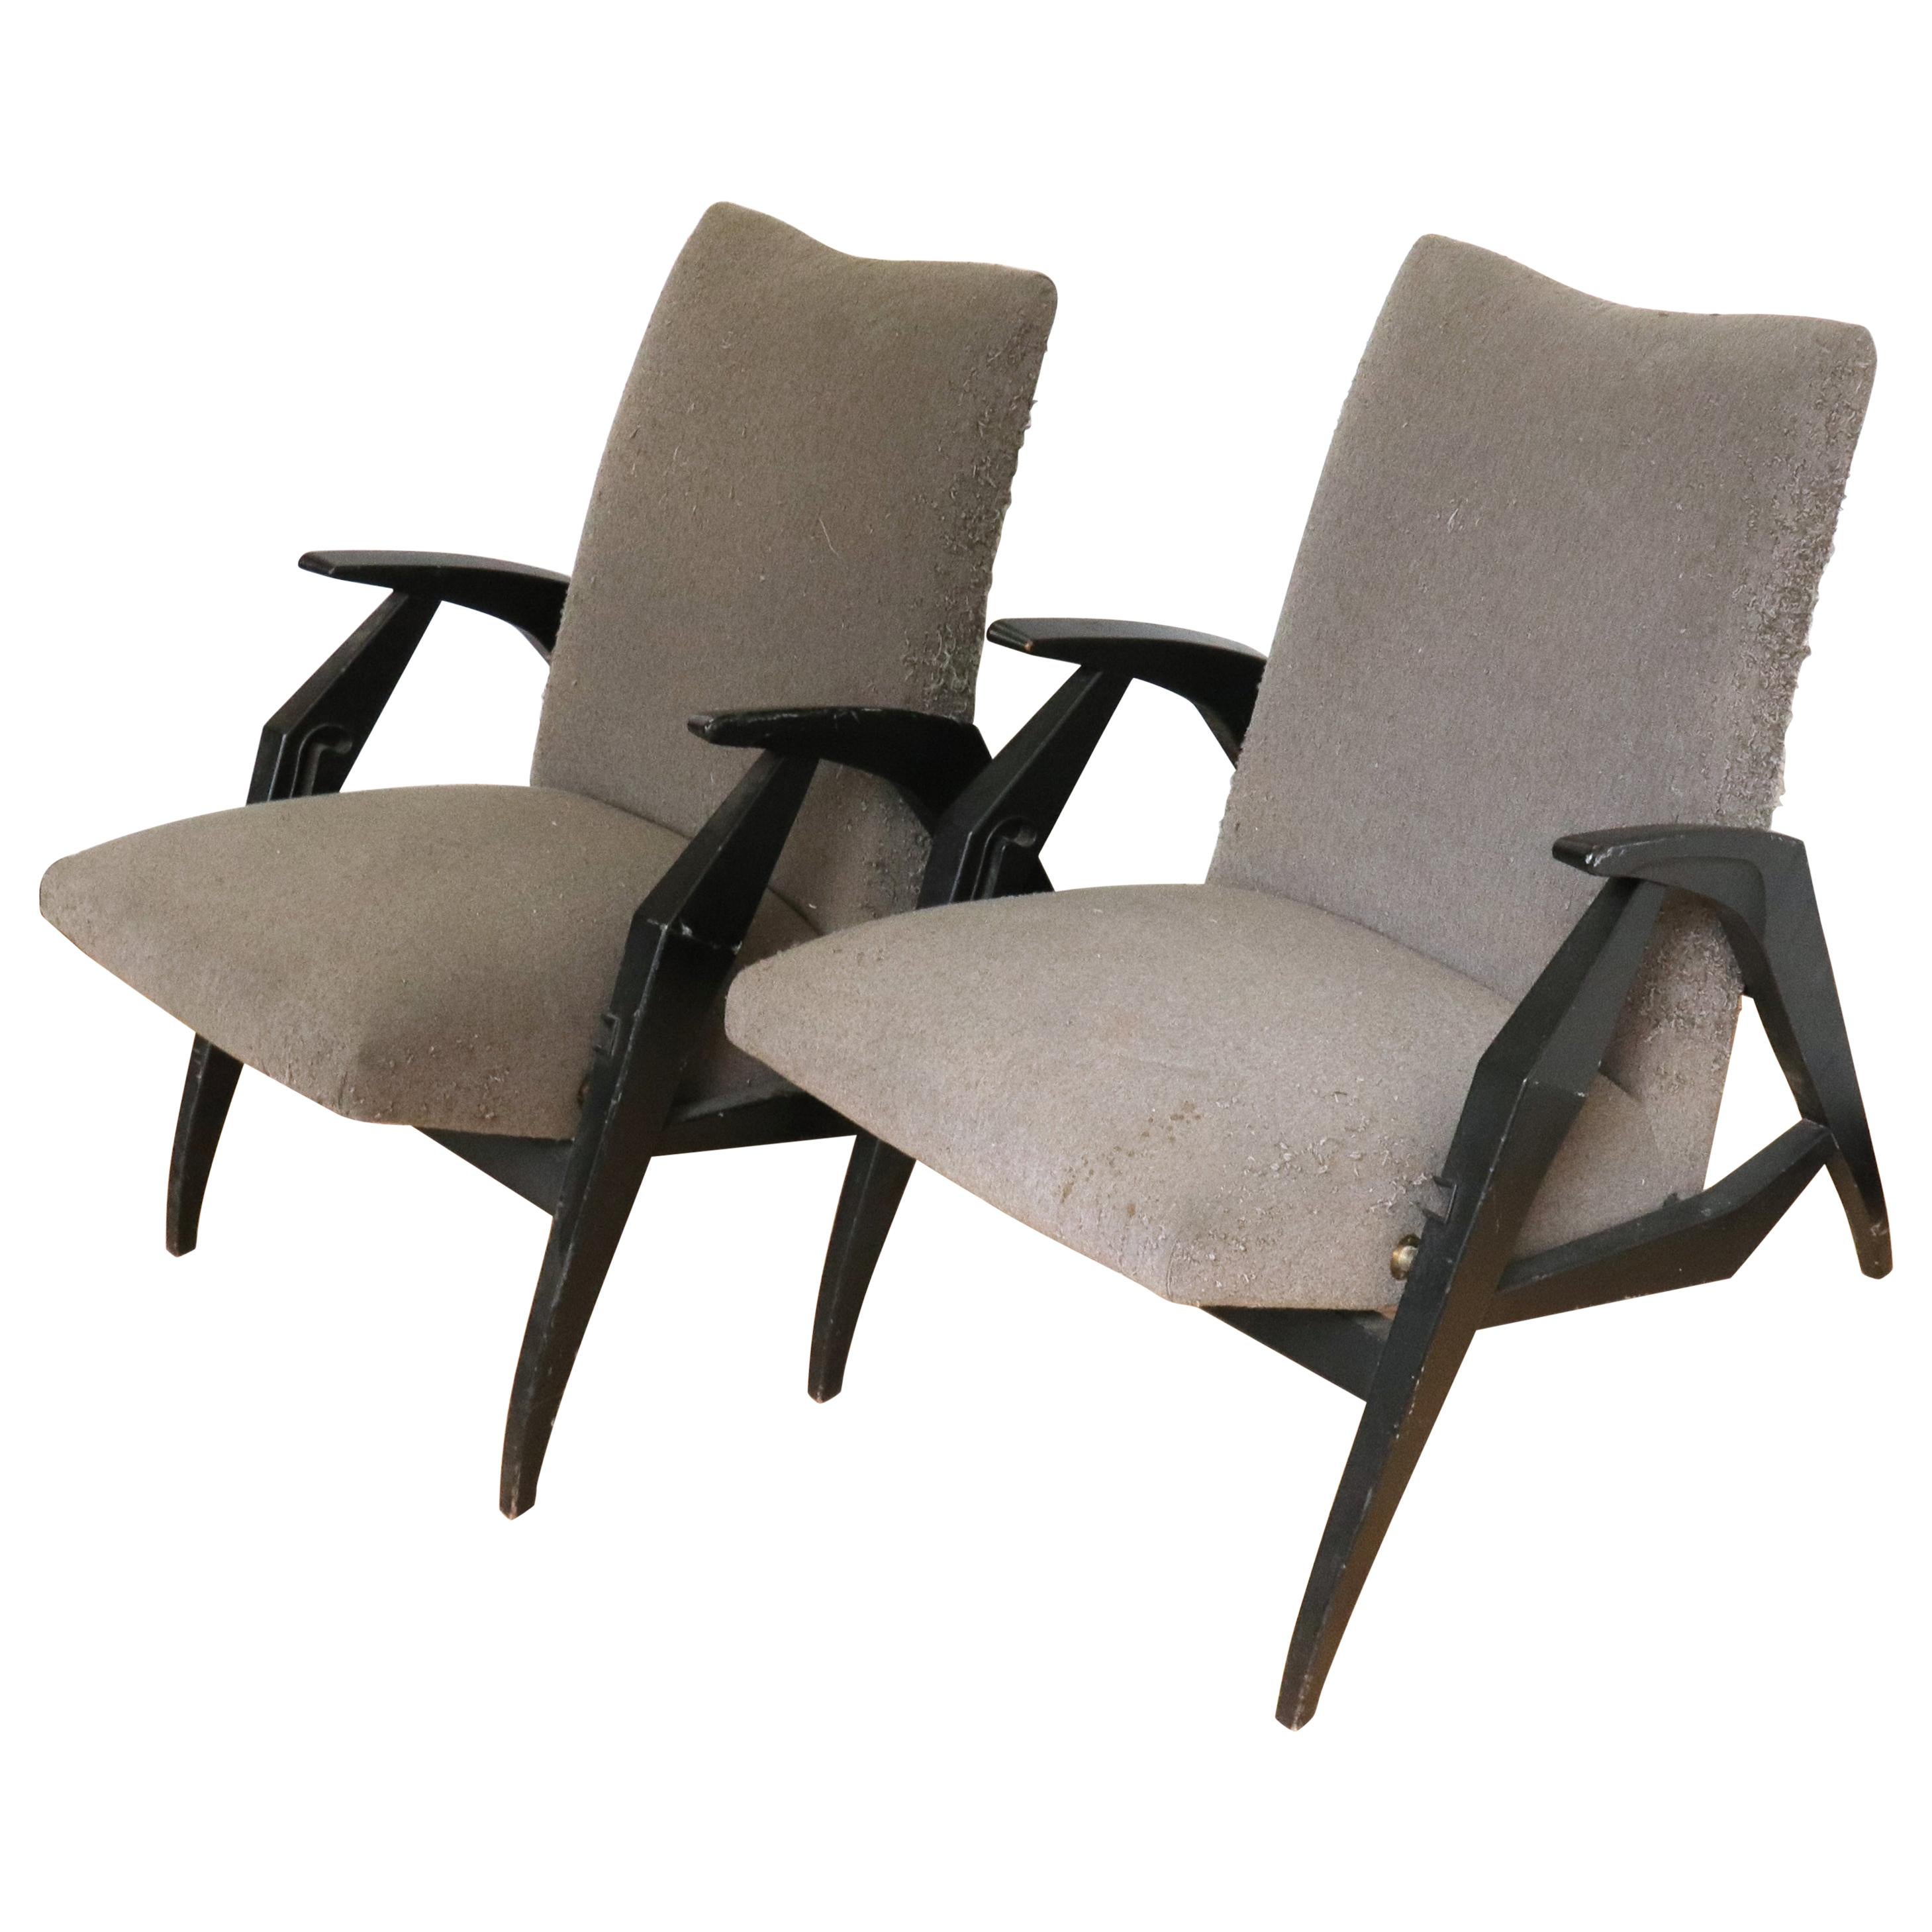 Petits fauteuils inclinables italiens modernes du milieu du siècle dernier en bois laqué